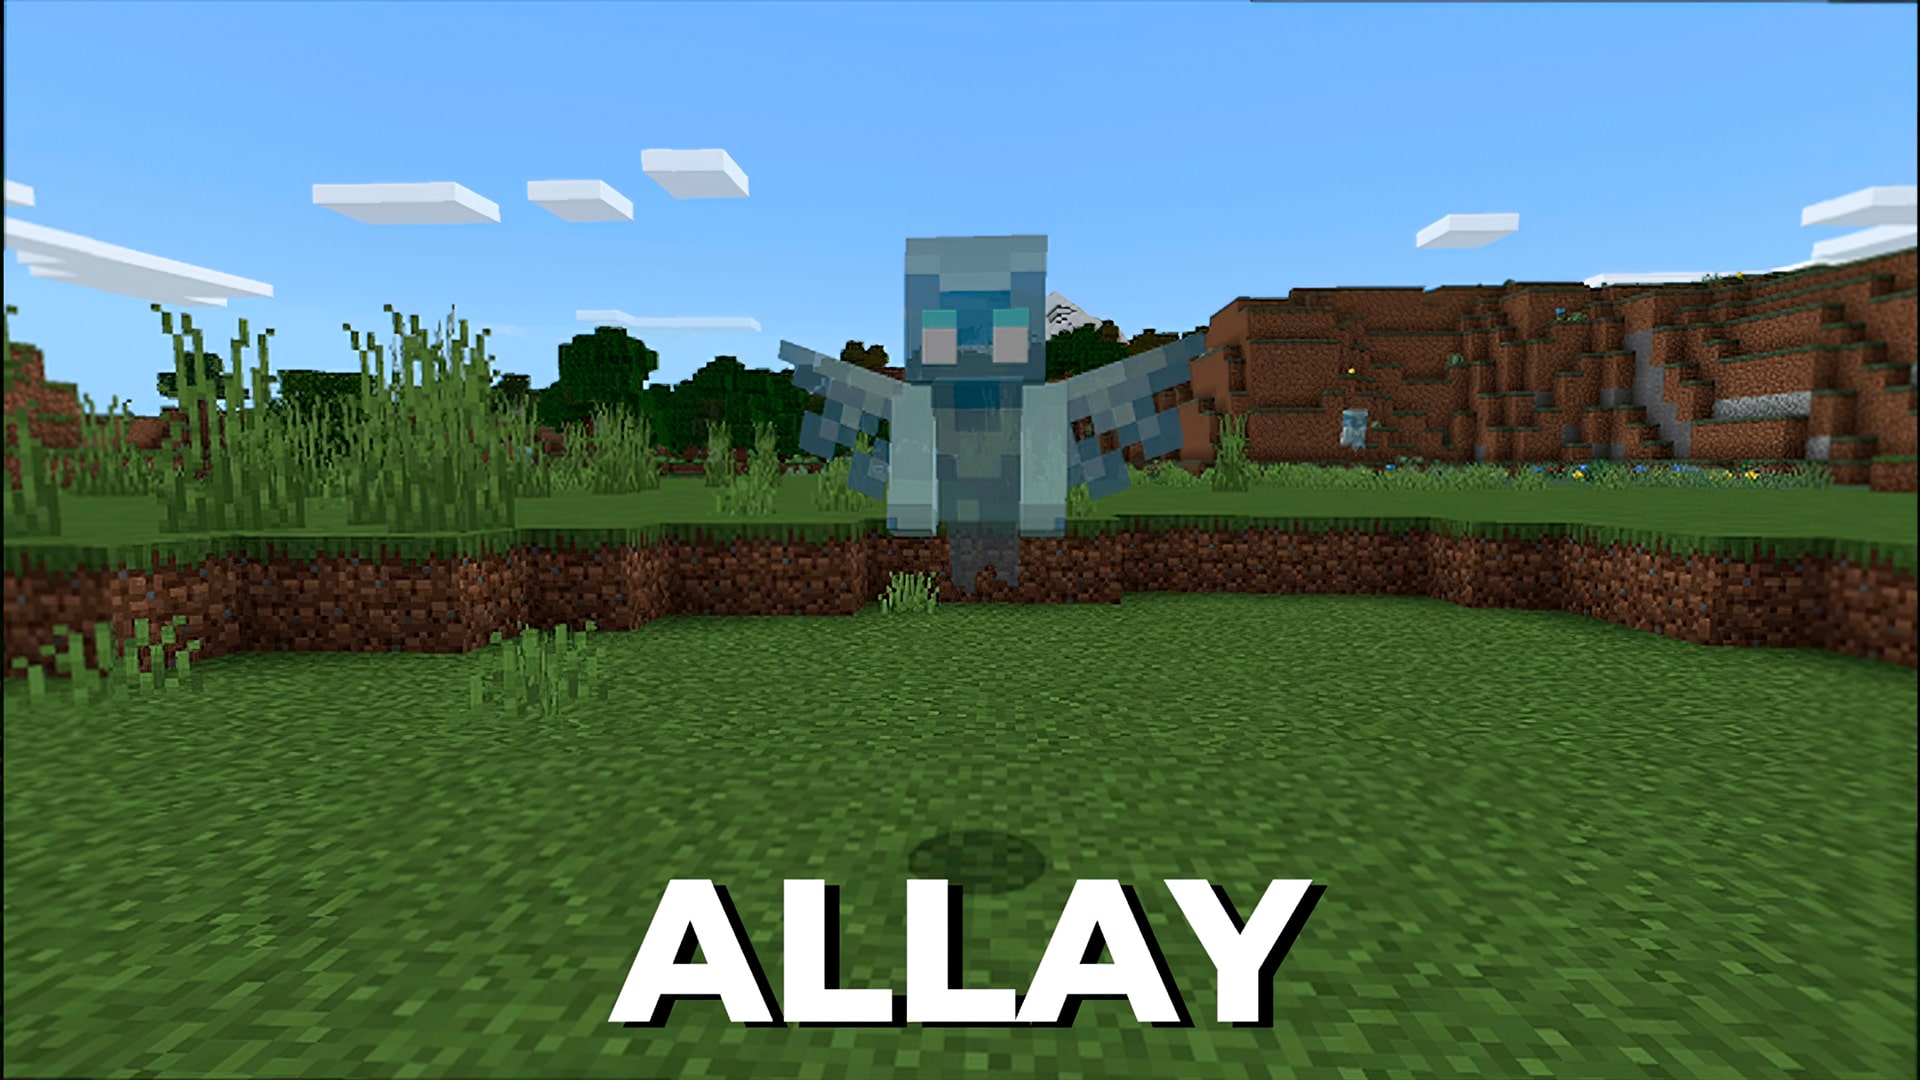 Allay